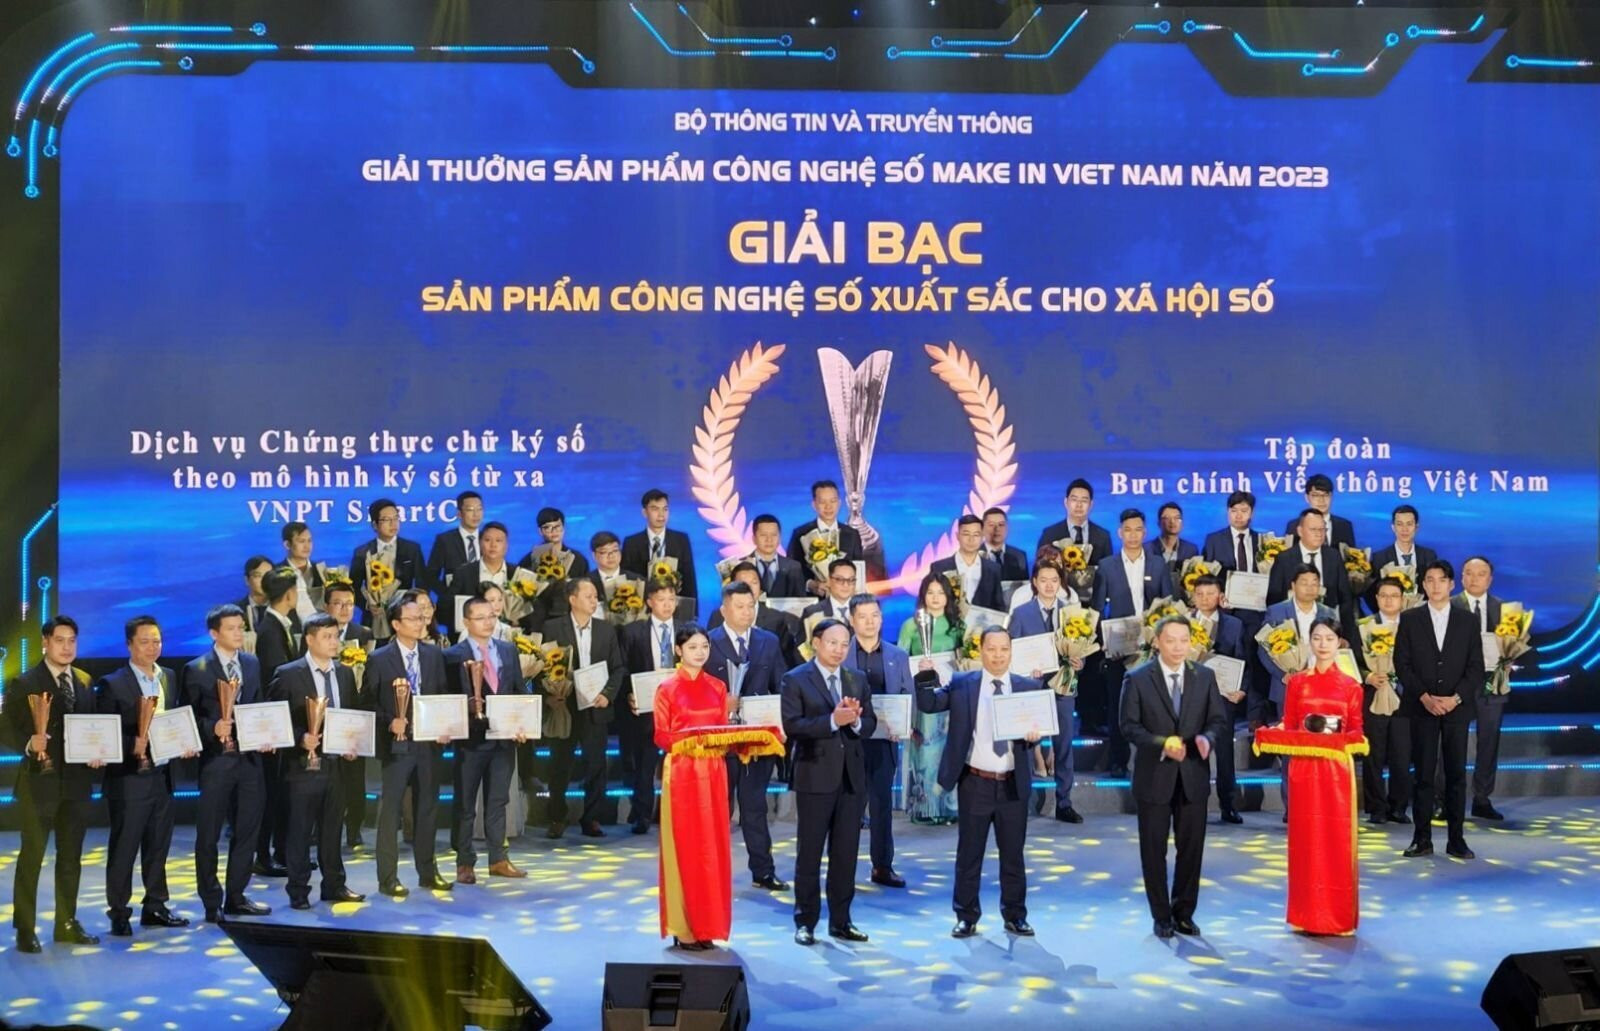 VNPT “chinh phục” Make in Vietnam 2023 với 6 sản phẩm số được giải thưởng cao.